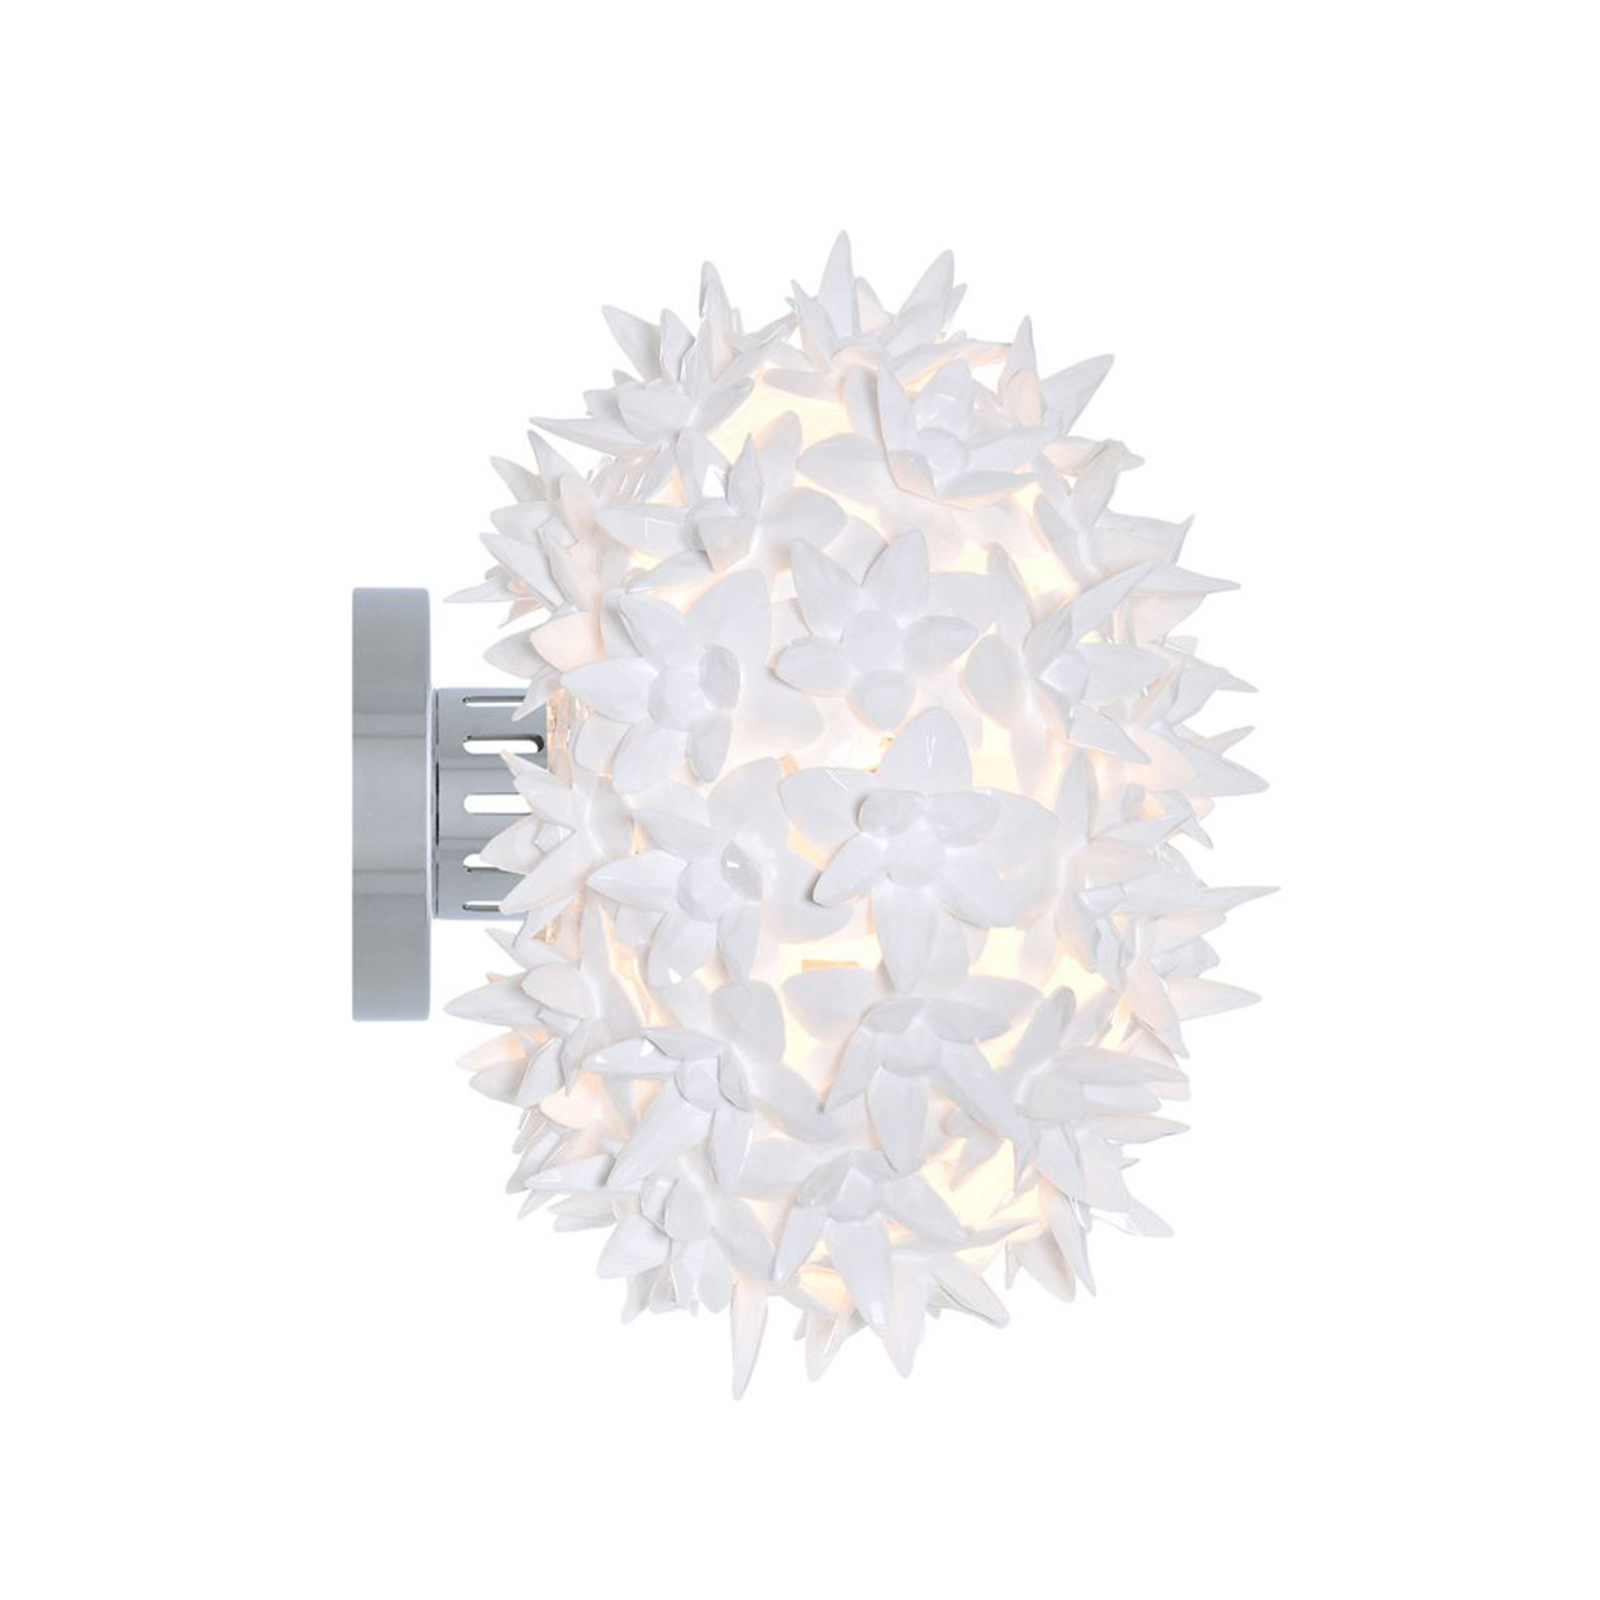 Kartell Bloom CW2 LED-Deckenleuchte G9, weiß